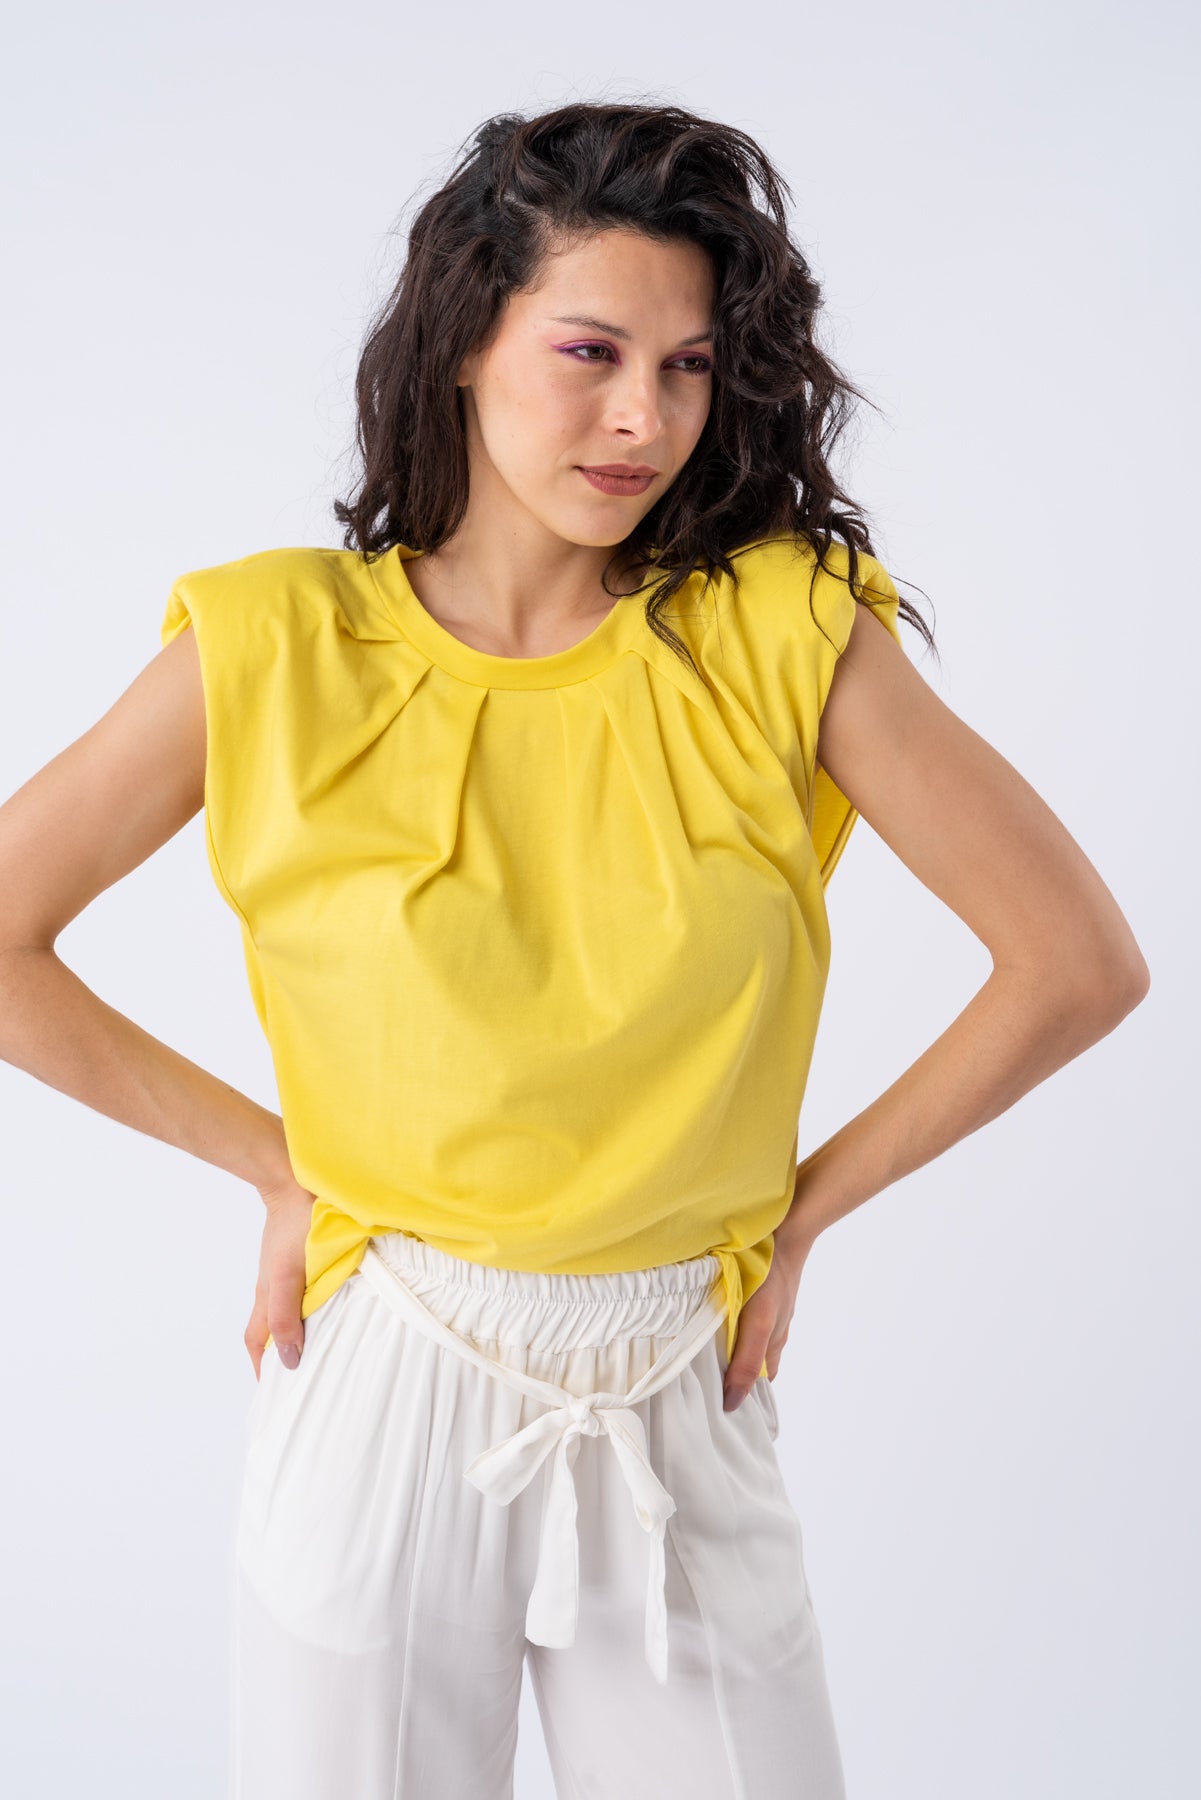 Remera Plisse - Amarilla | Blusas, Camisas y Remeras | Viviana Méndez - Remera Plisse Amarilla - Viviana Méndez